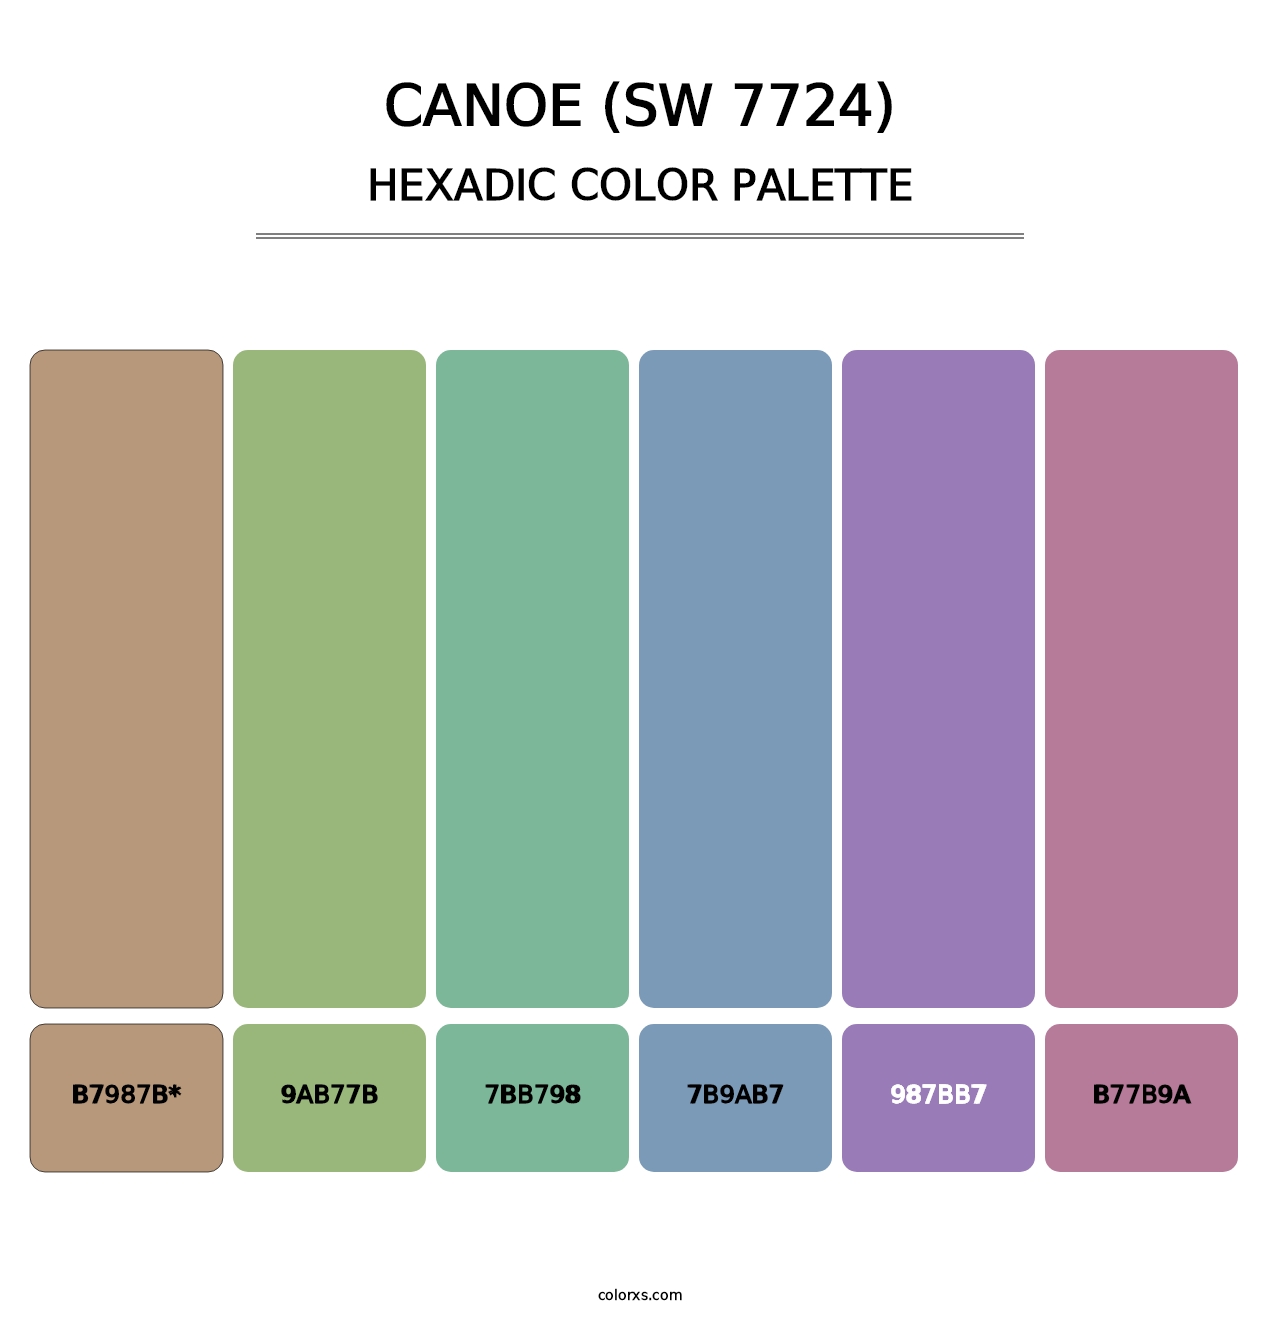 Canoe (SW 7724) - Hexadic Color Palette